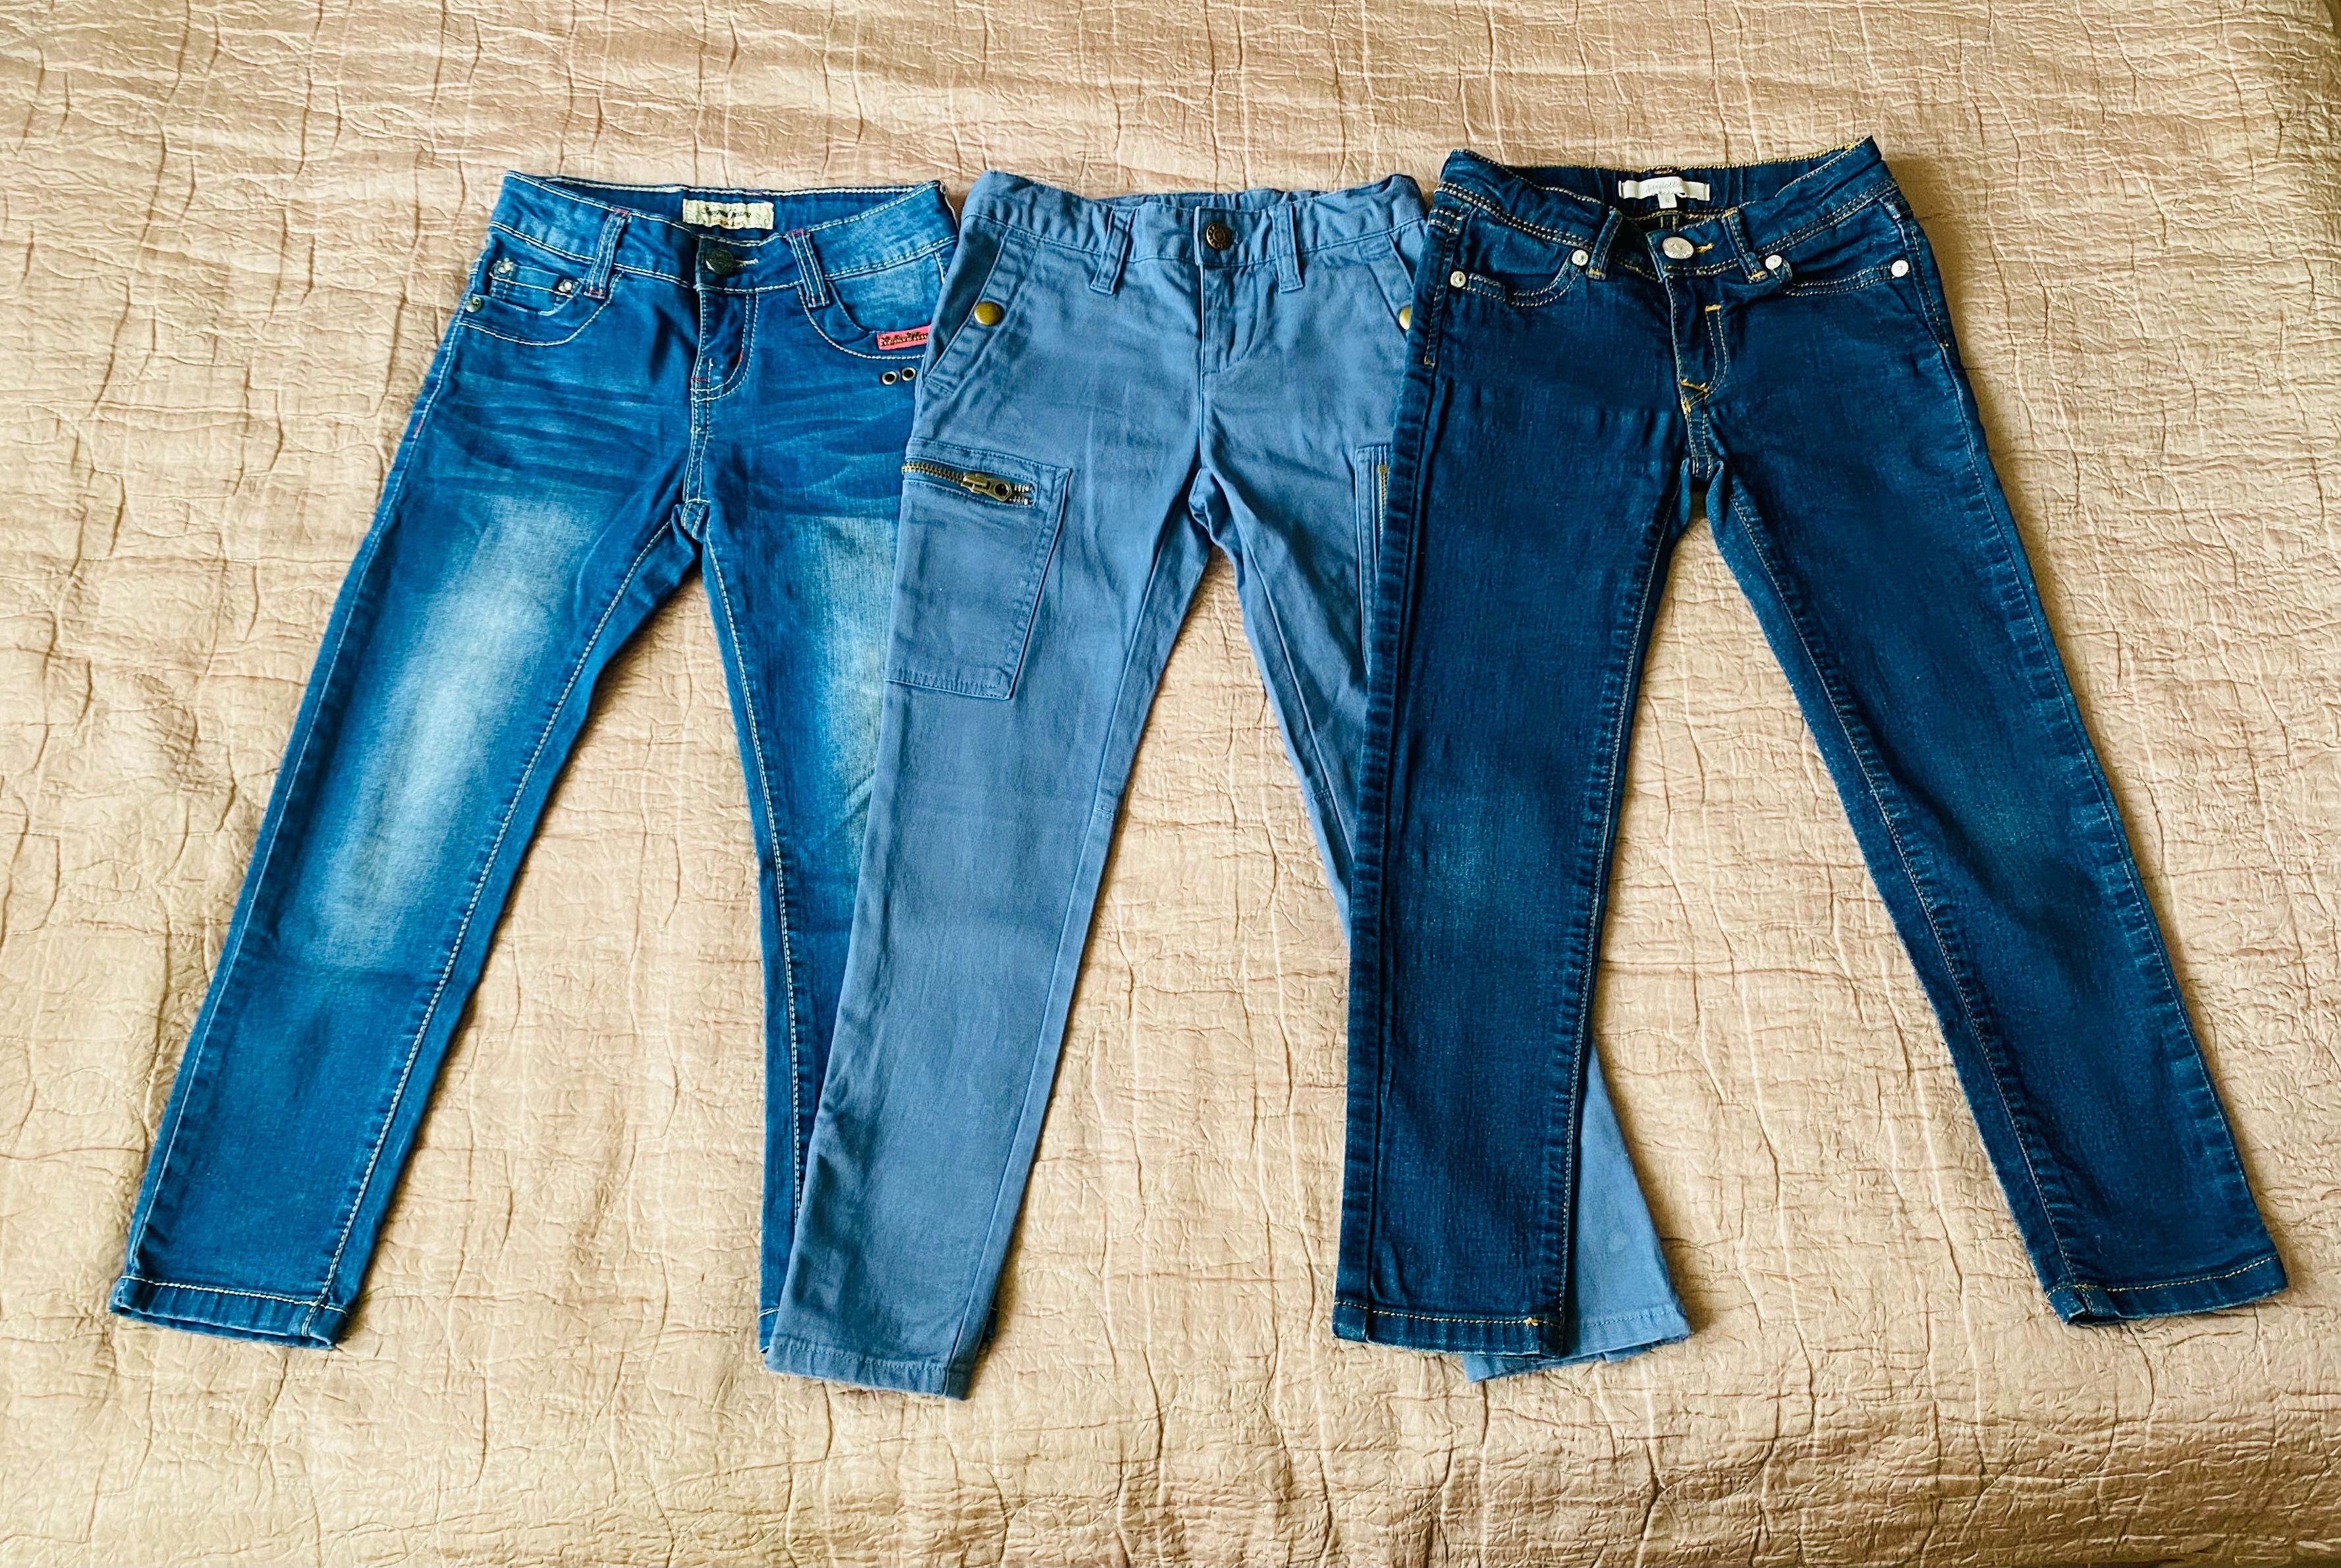 Дитячі штани, джинси на дівчинку 4-5 років розмір 116